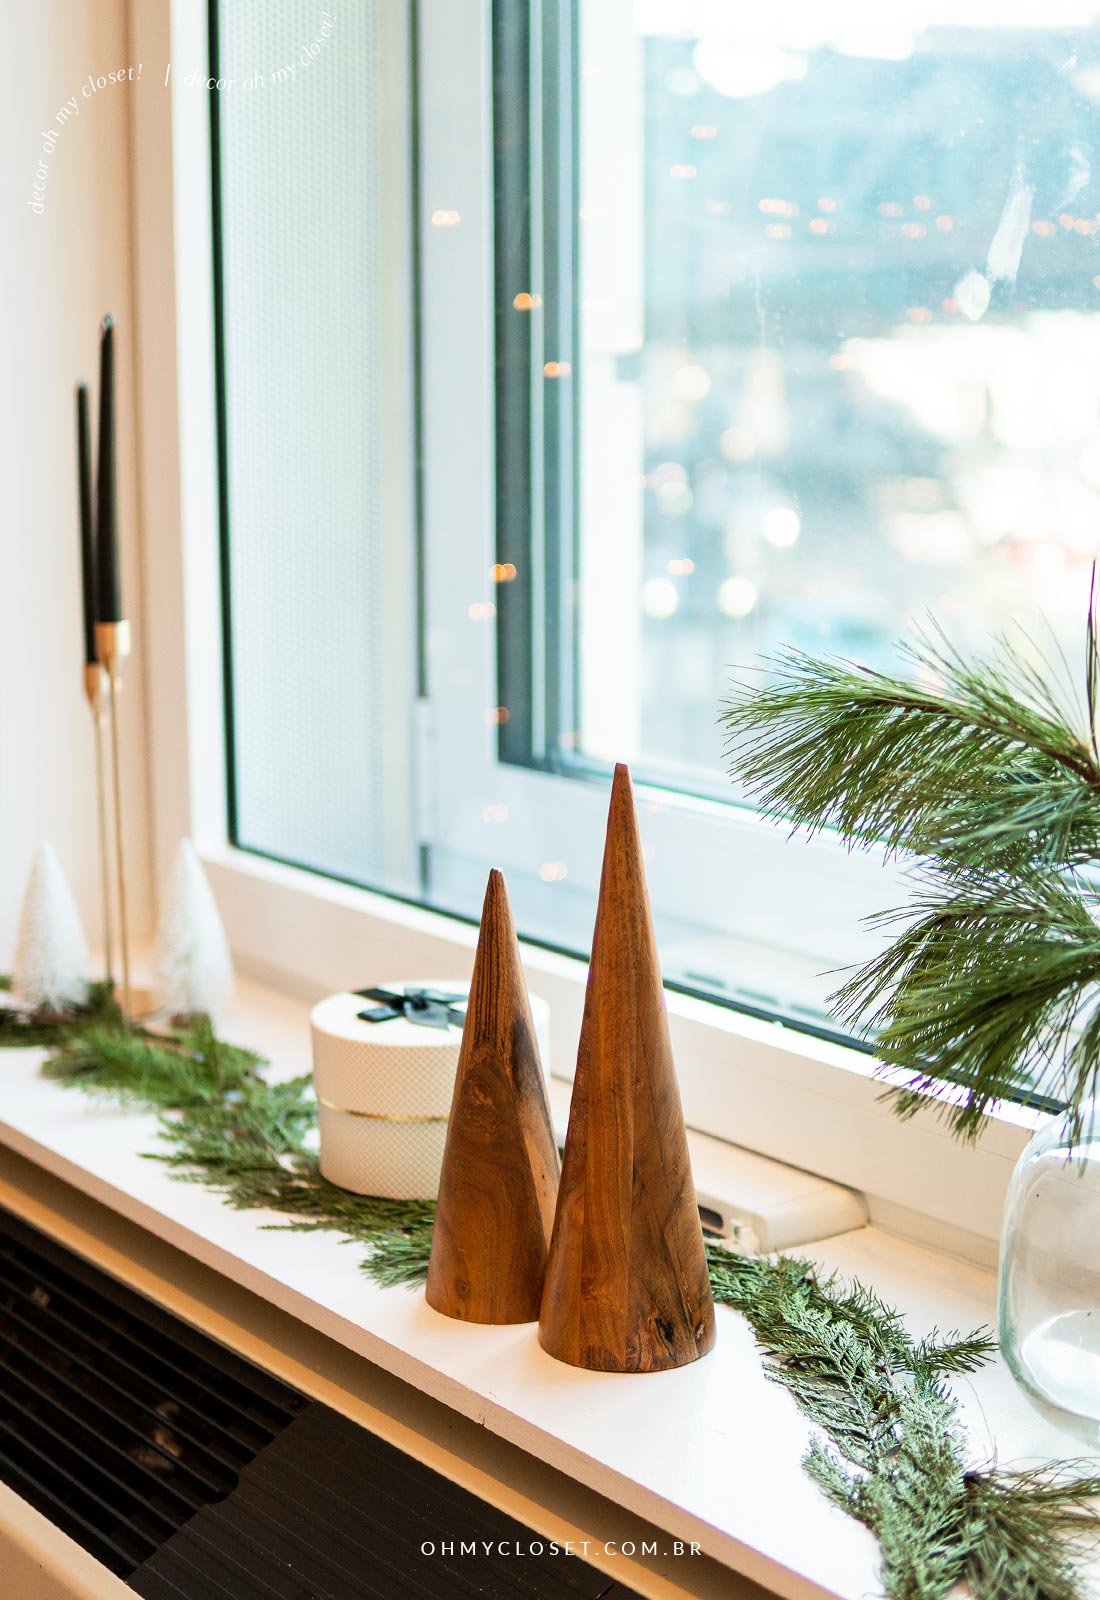 Outro ângulo da decoração de natal com árvores de madeira cônicas e folhagens de pinheiro.